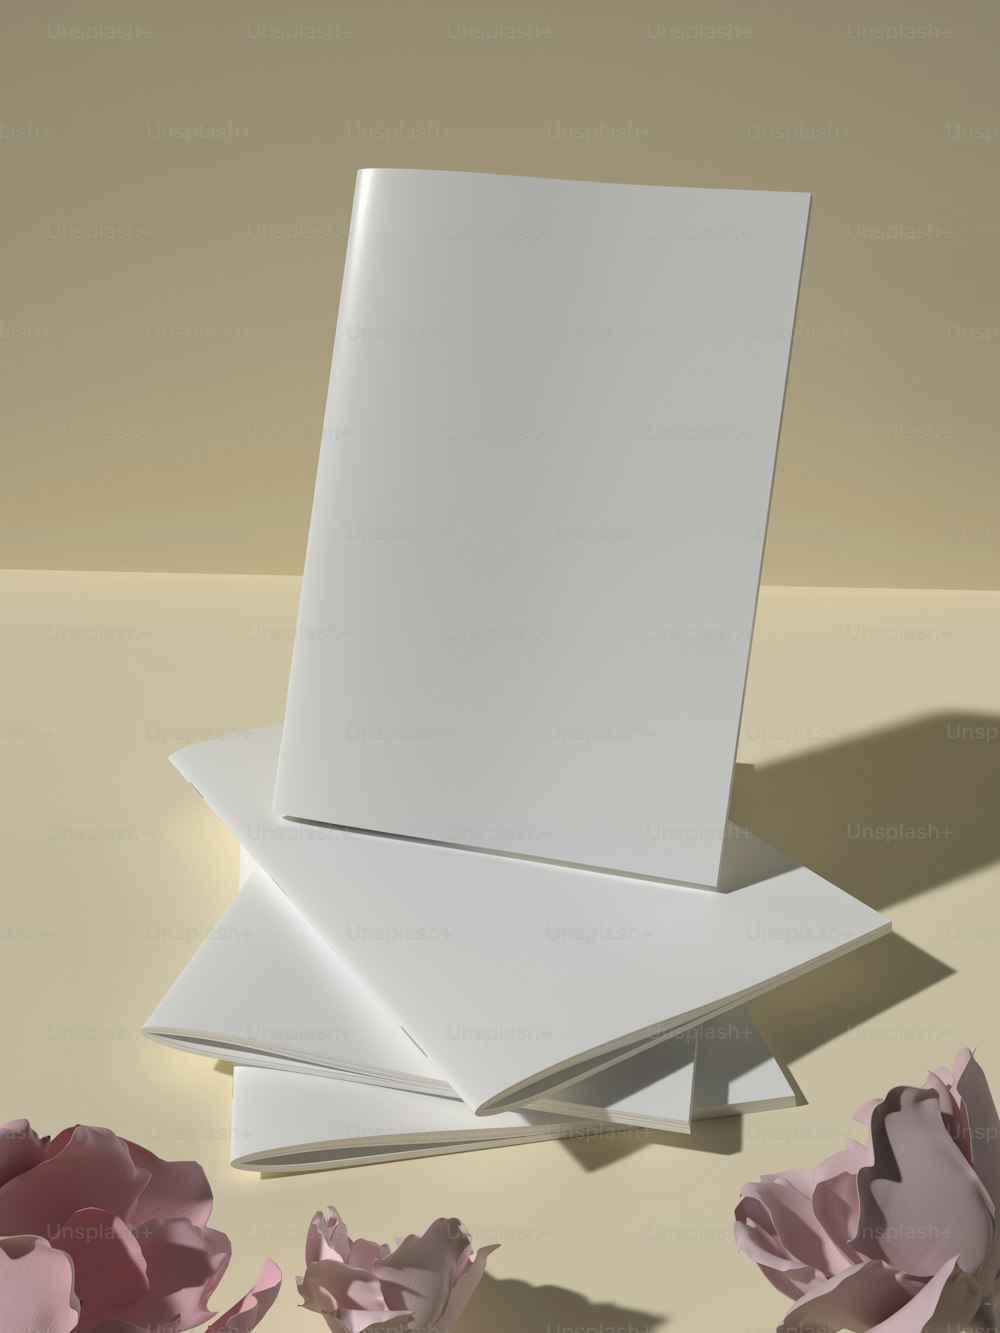 테이블 위에 놓인 흰색 카드 더미